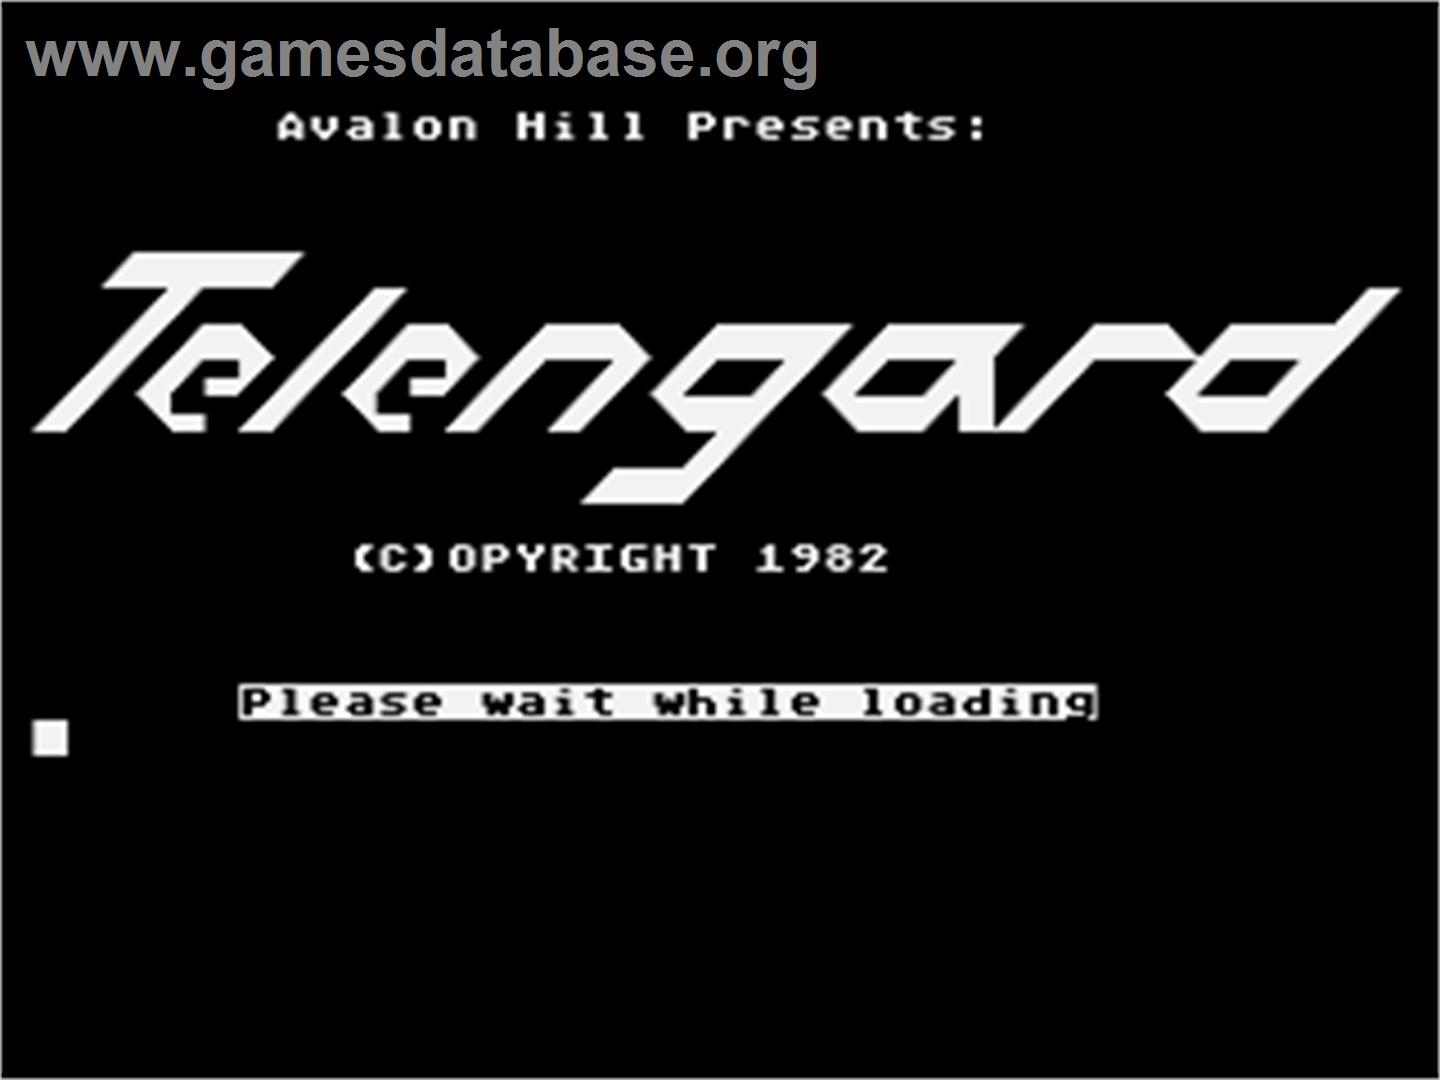 Telengard - Atari 8-bit - Artwork - Title Screen